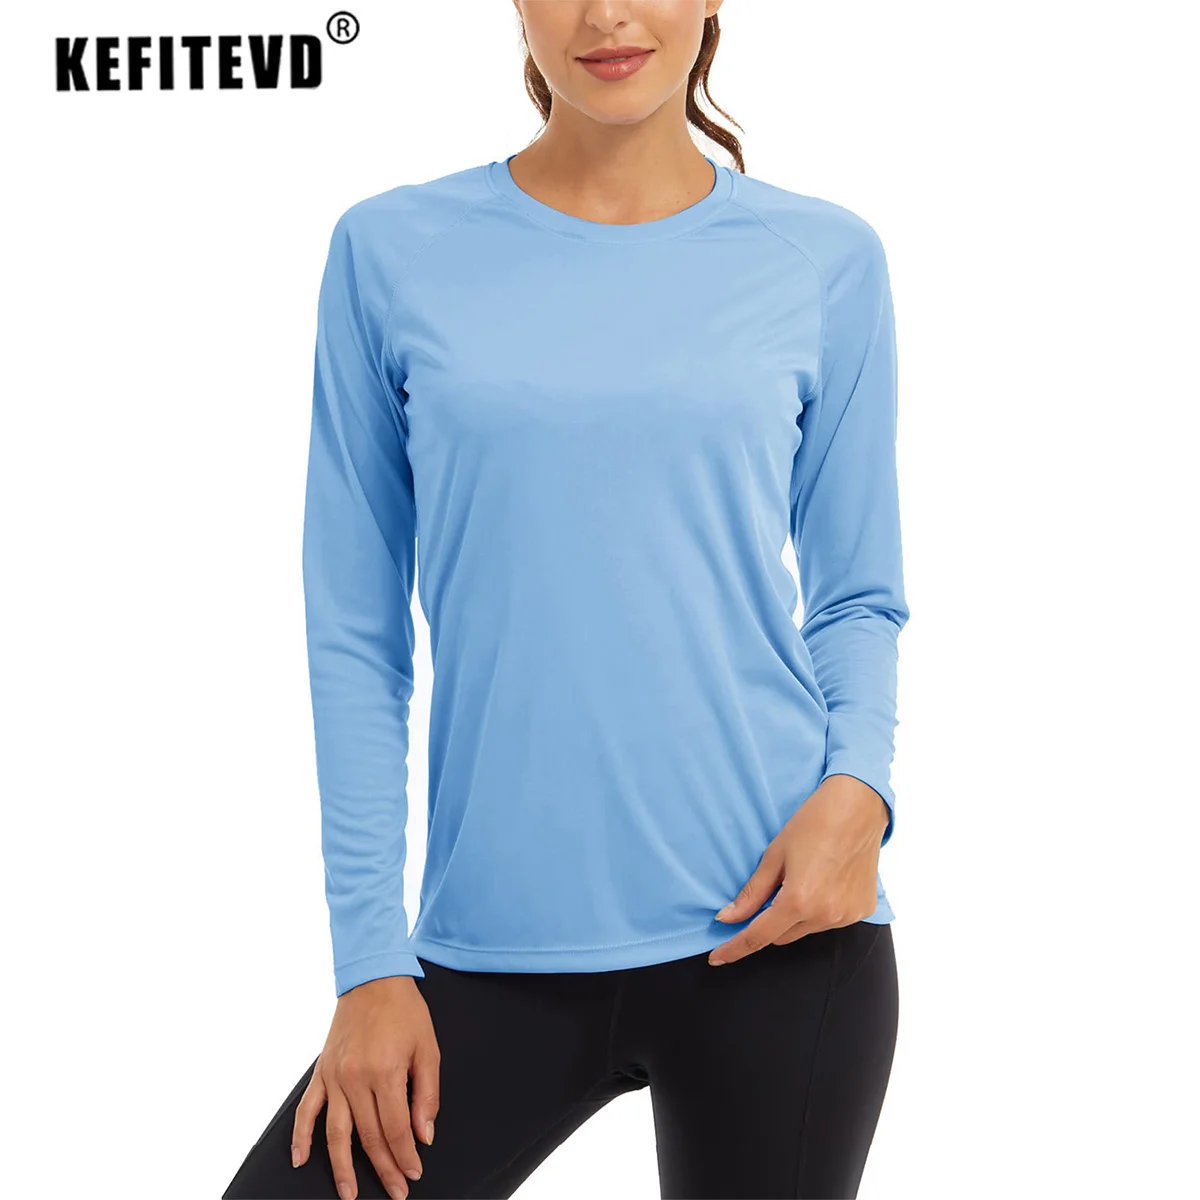  Womens Running Shirts Long Sleeve Workout Shirts Quick Dry  UPF50+ Sun Shirts Lightweight Watch Window Workout Tops Navy XL